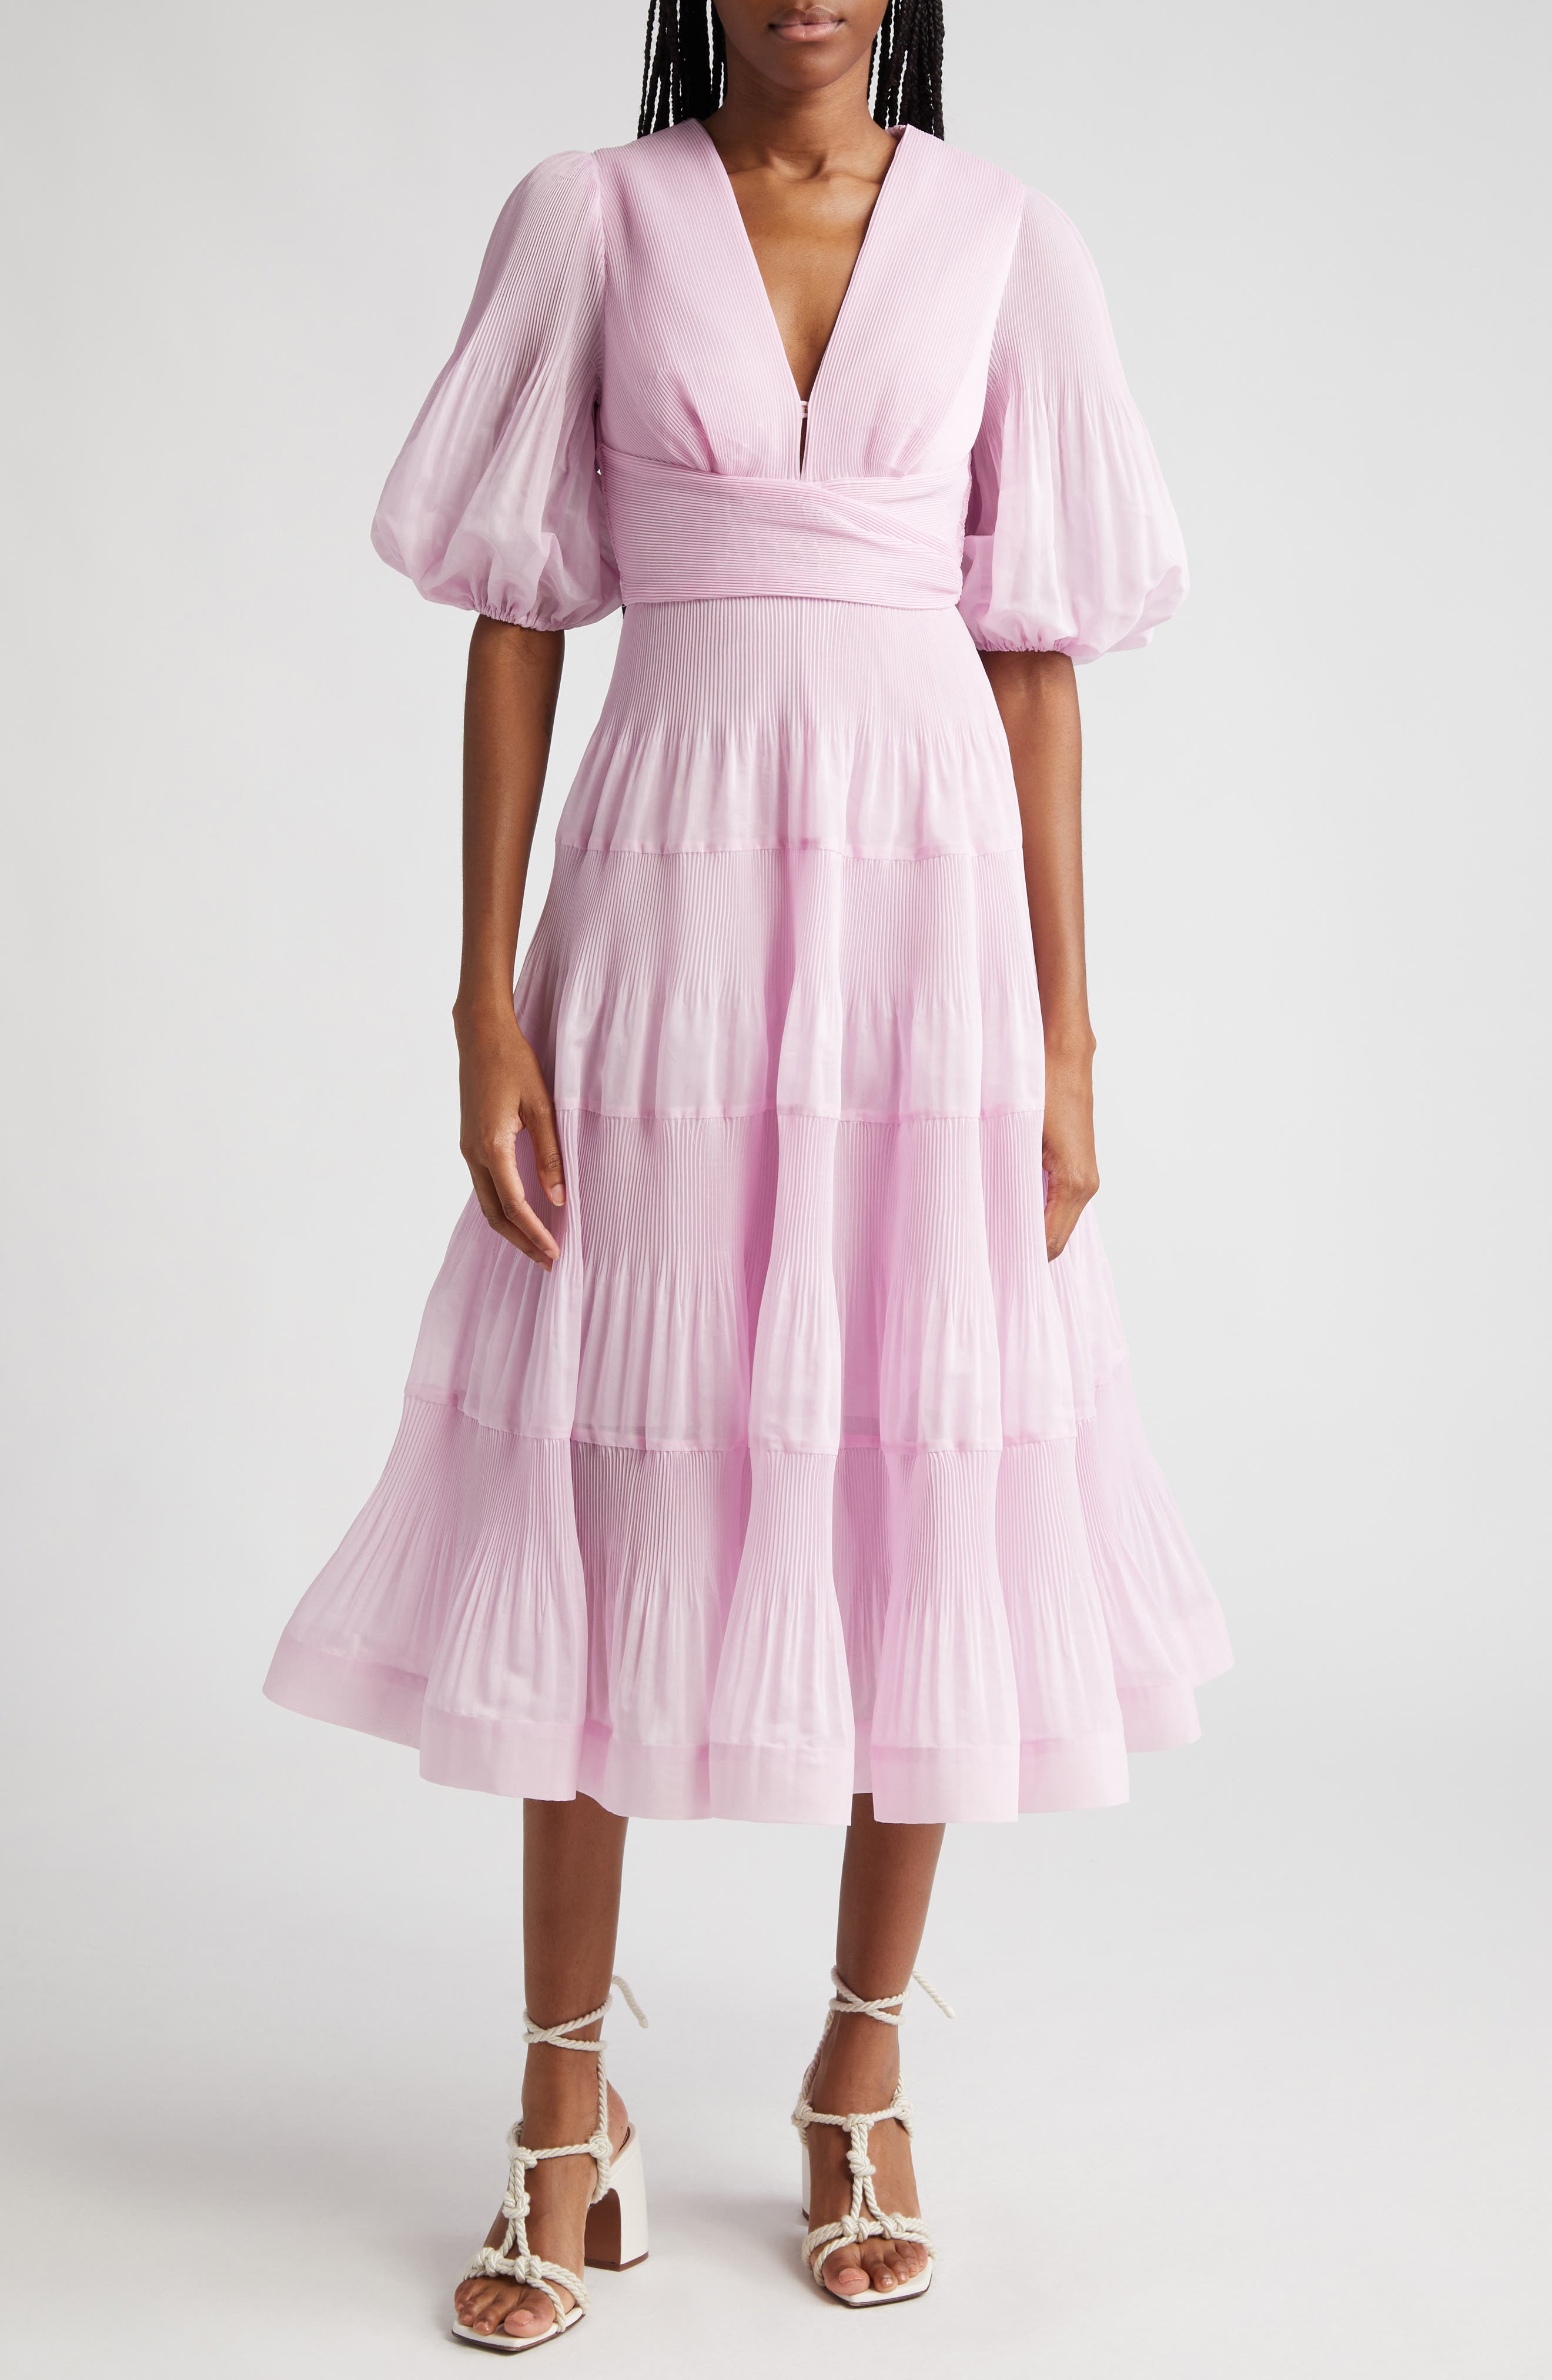 nordstrom pink dress